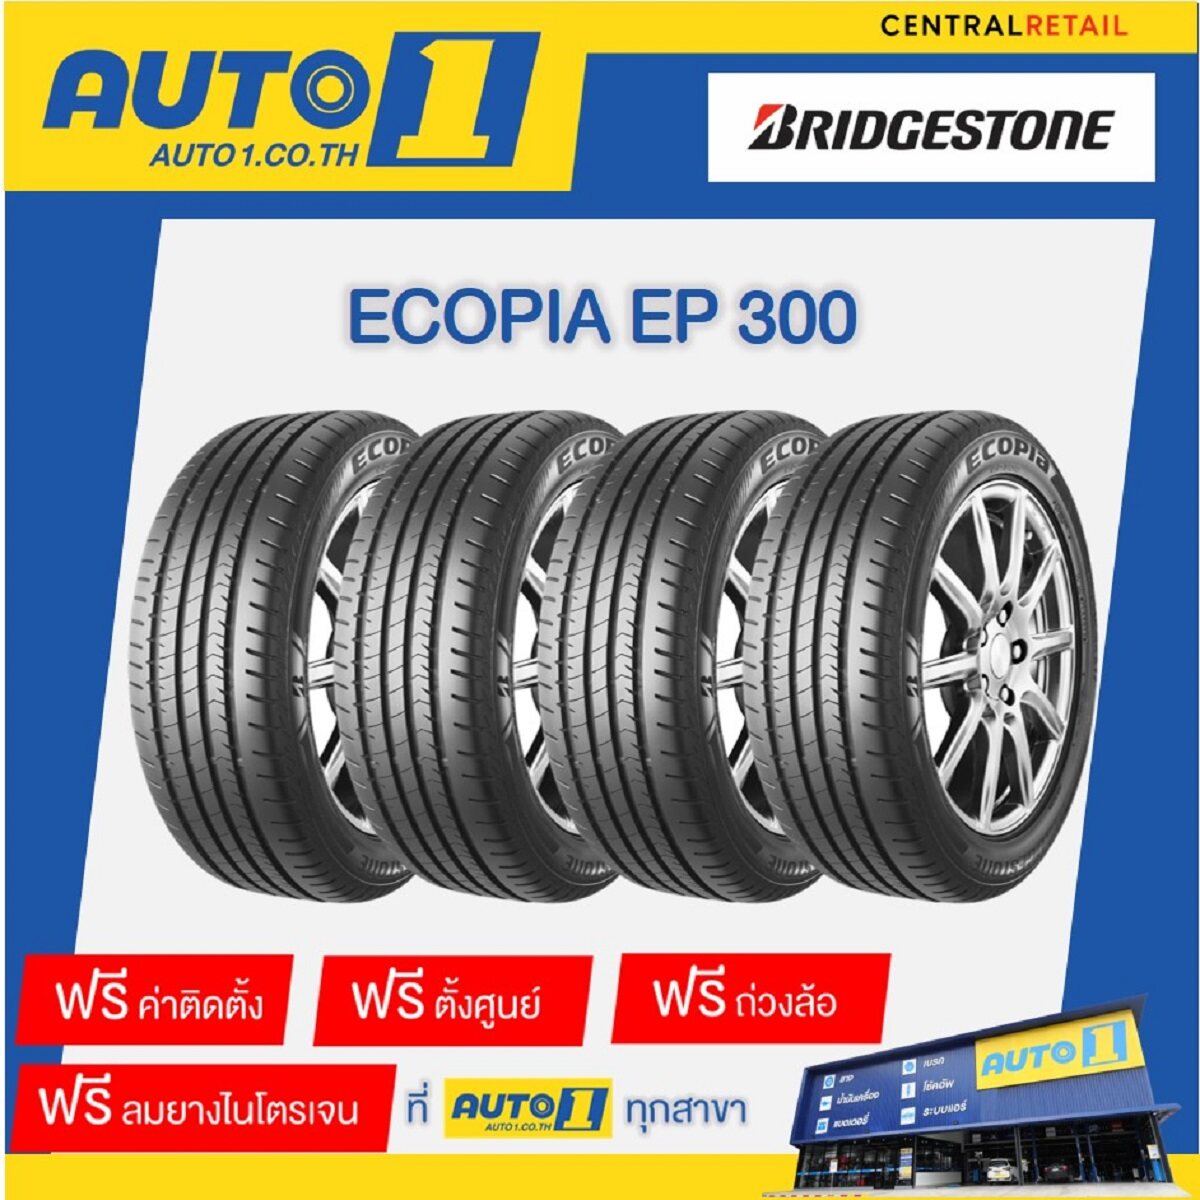 ยางรถยนต์ 205/55R16 Bridgestone Ecopia EP300 บริดจสโตน (รถเก๋ง ขอบ16 จำนวน 4 เส้น พร้อมติดตั้งยางที่ศูนย์บริการออโต้วัน)